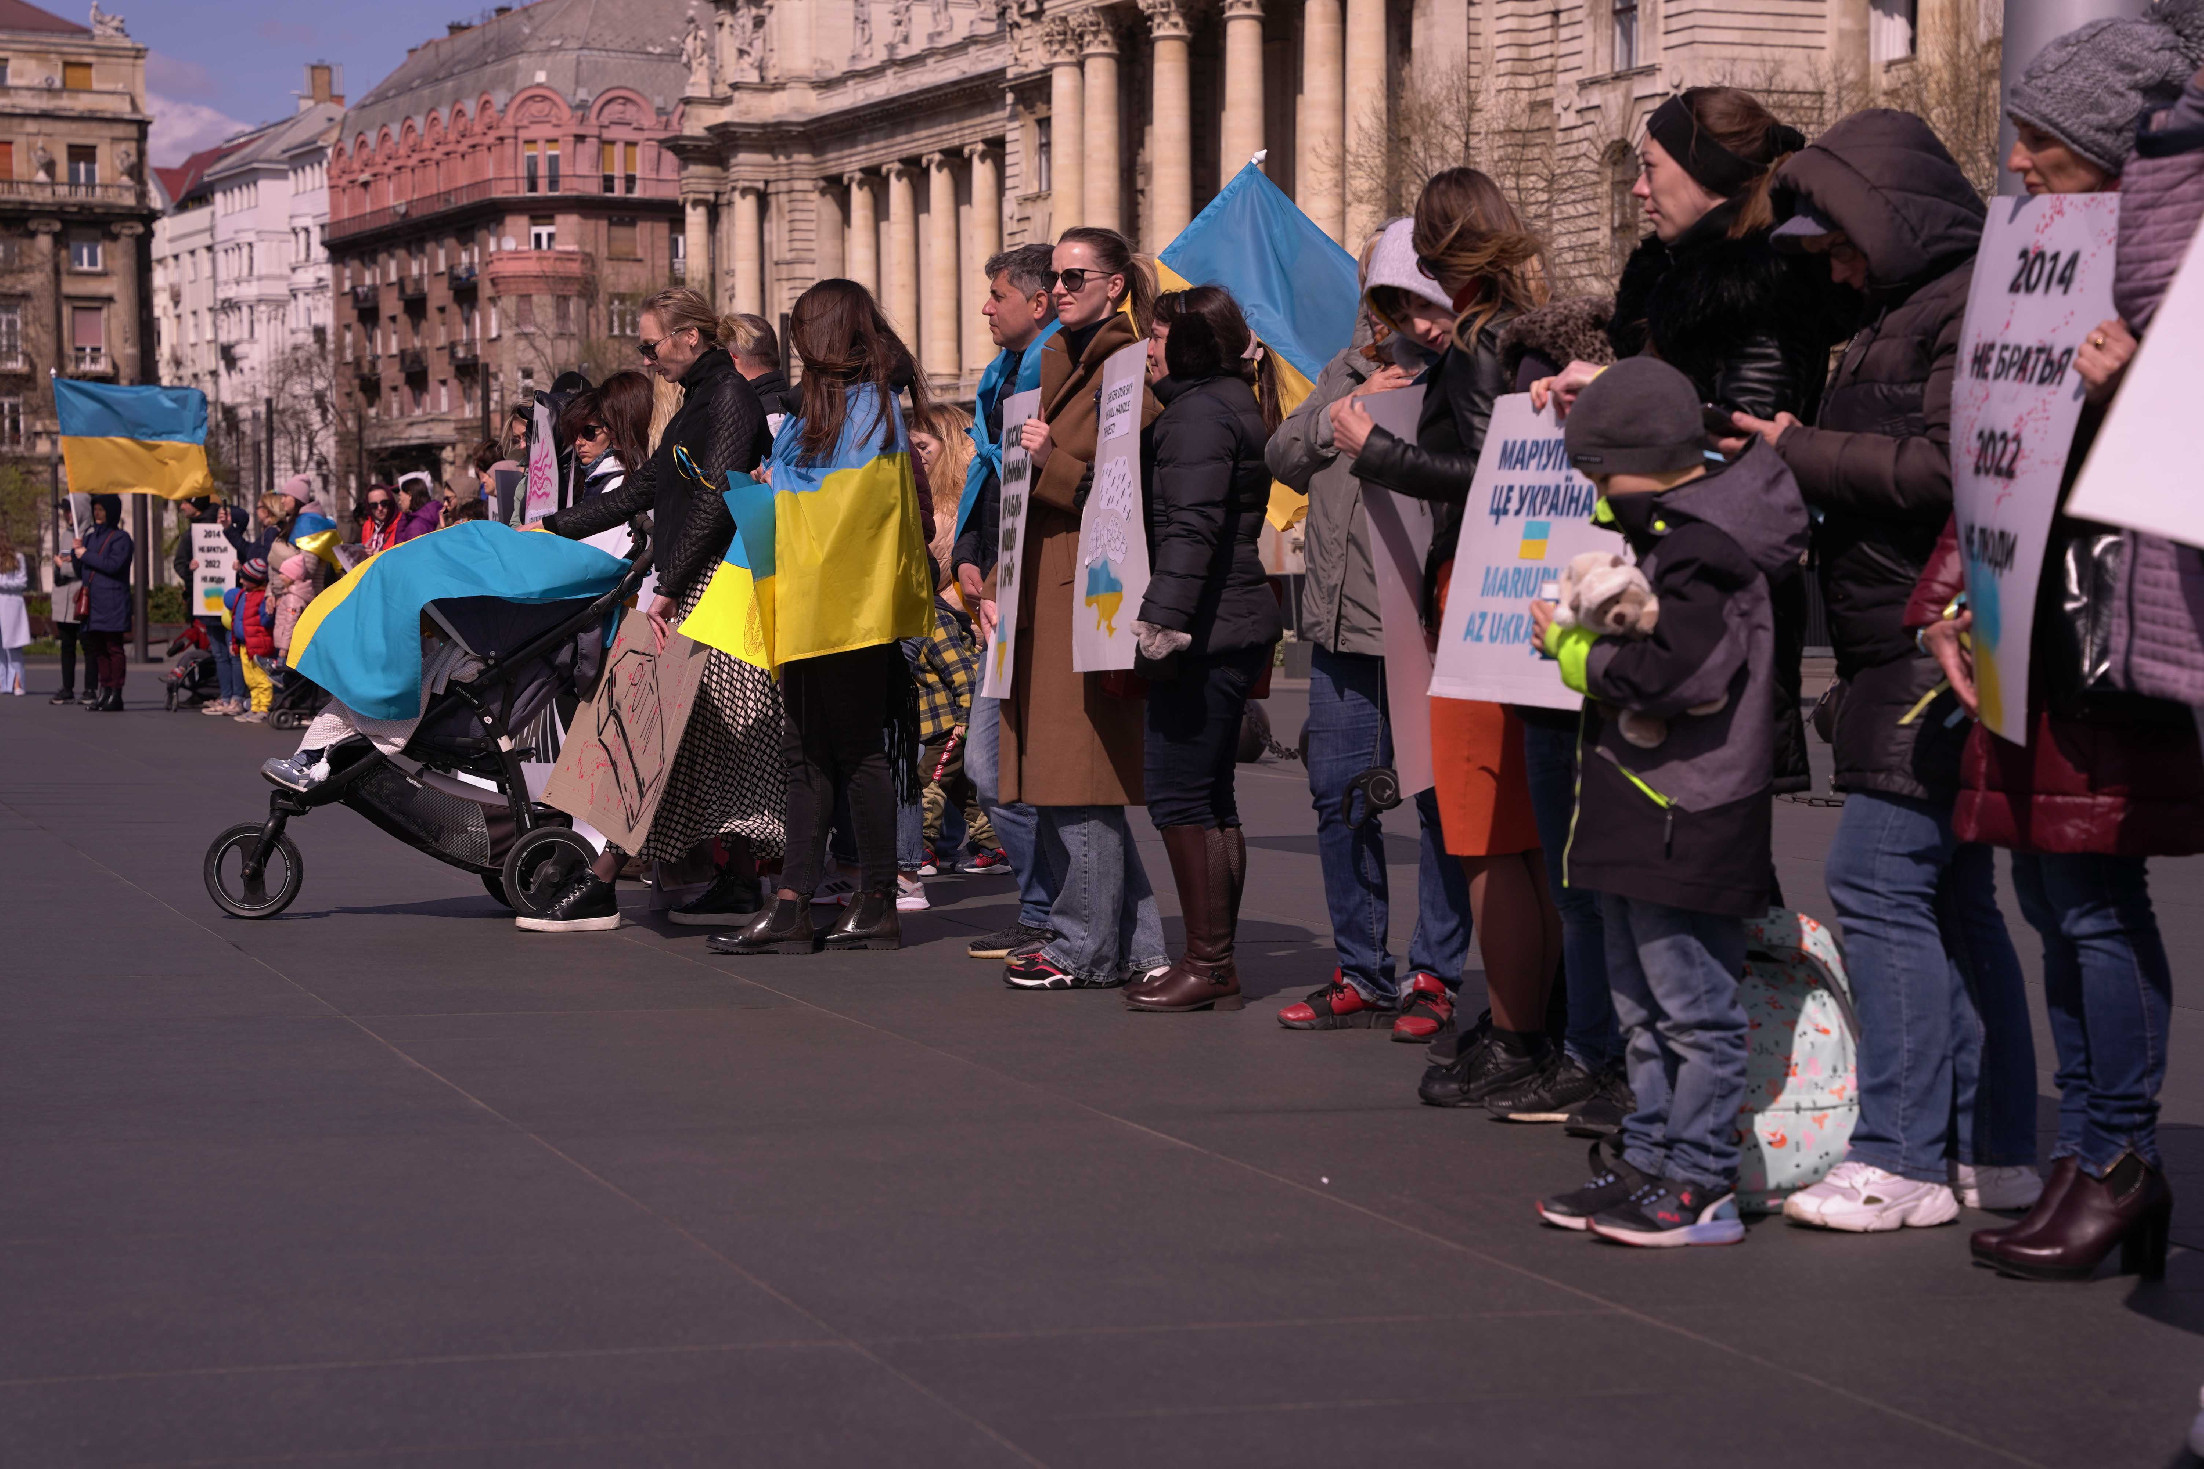 Megemlékezést tartottak az ukrajnai tömegmészárlások áldozatairól